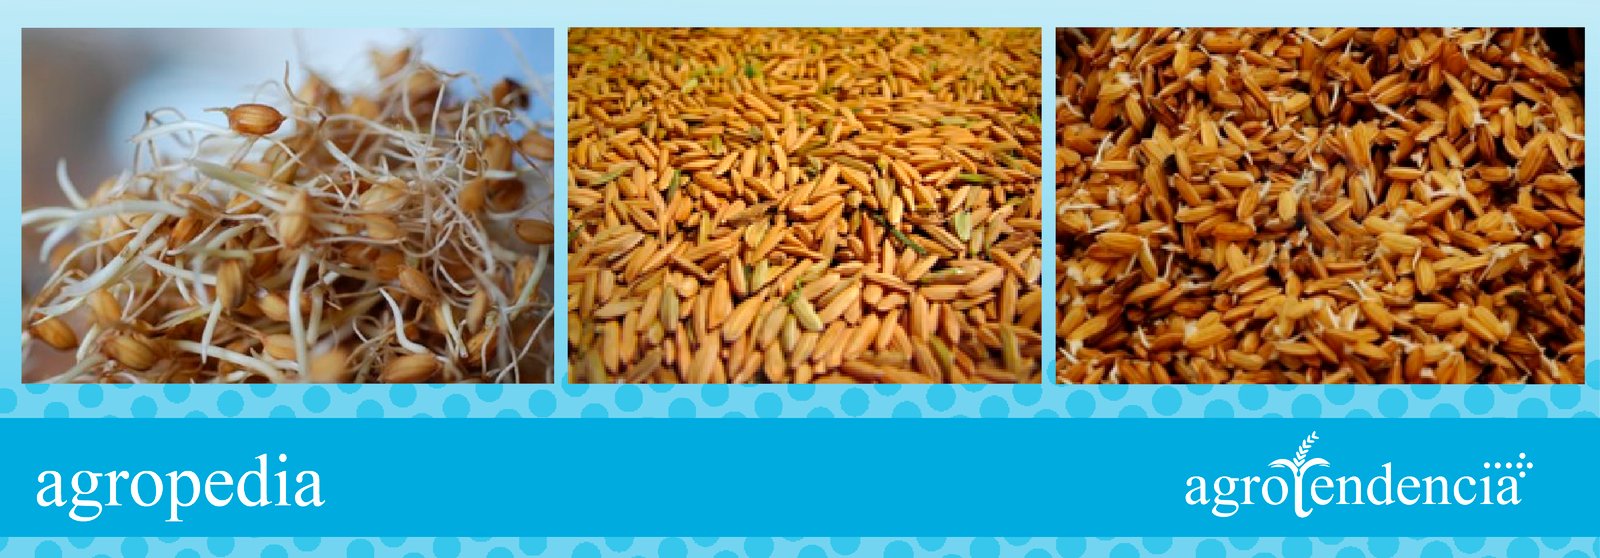 Cultivo de arroz - Semilla pregerminada de arroz